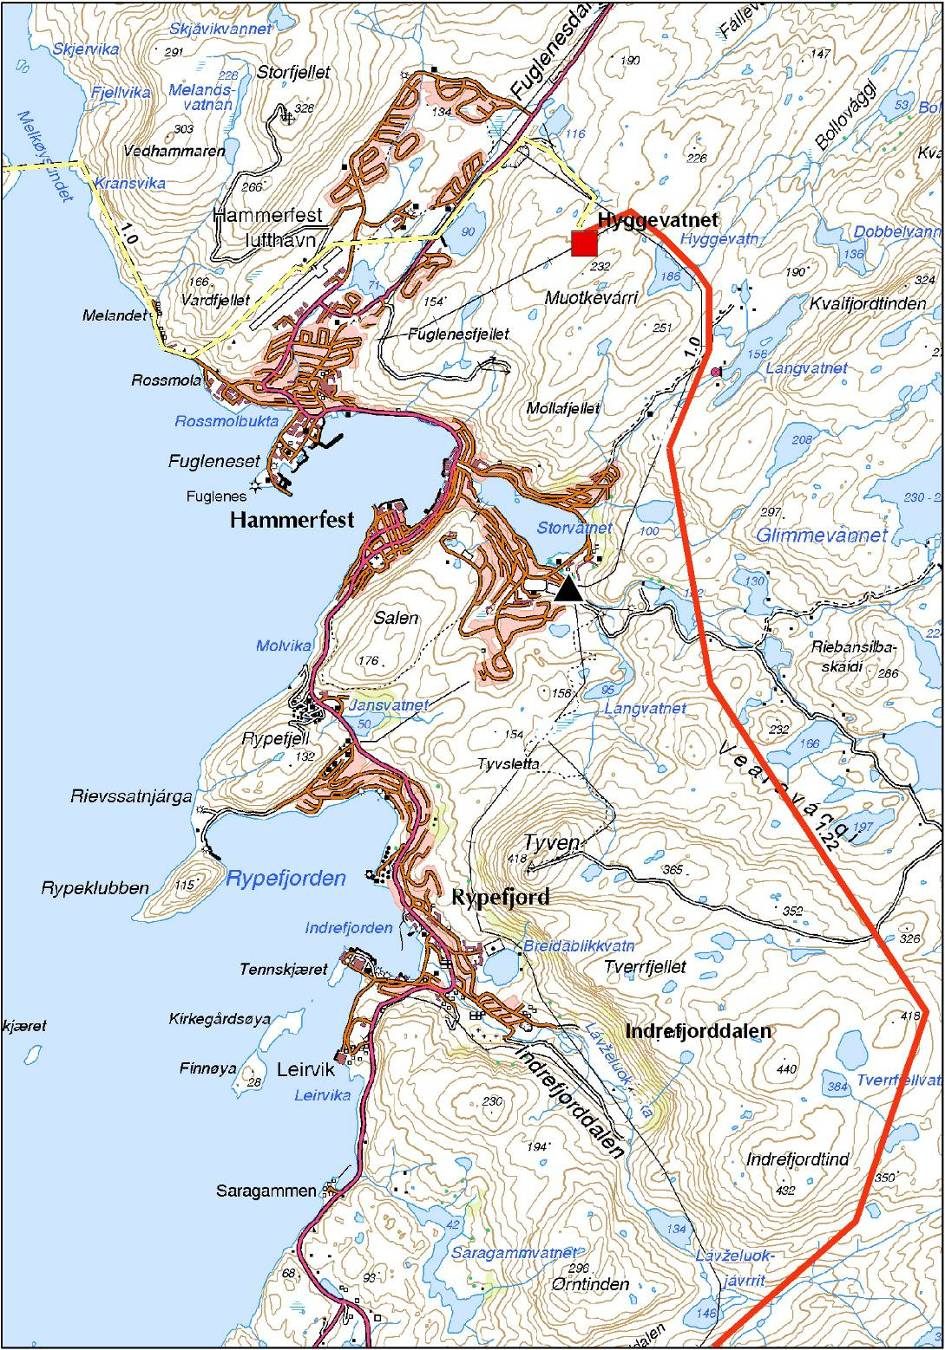 420 kv Balsfjord Hammerfest Traséalternativ 1.22 1.0 Planlagt 420 kv-ledning går frem til planlagt transformatorstasjon ved Hyggevatn, først i trasé 1.22 øst for Tyven, og deretter over i 1.0. I dette alternativet transformeres ved Hyggevatn (420 kv til 132 kv).